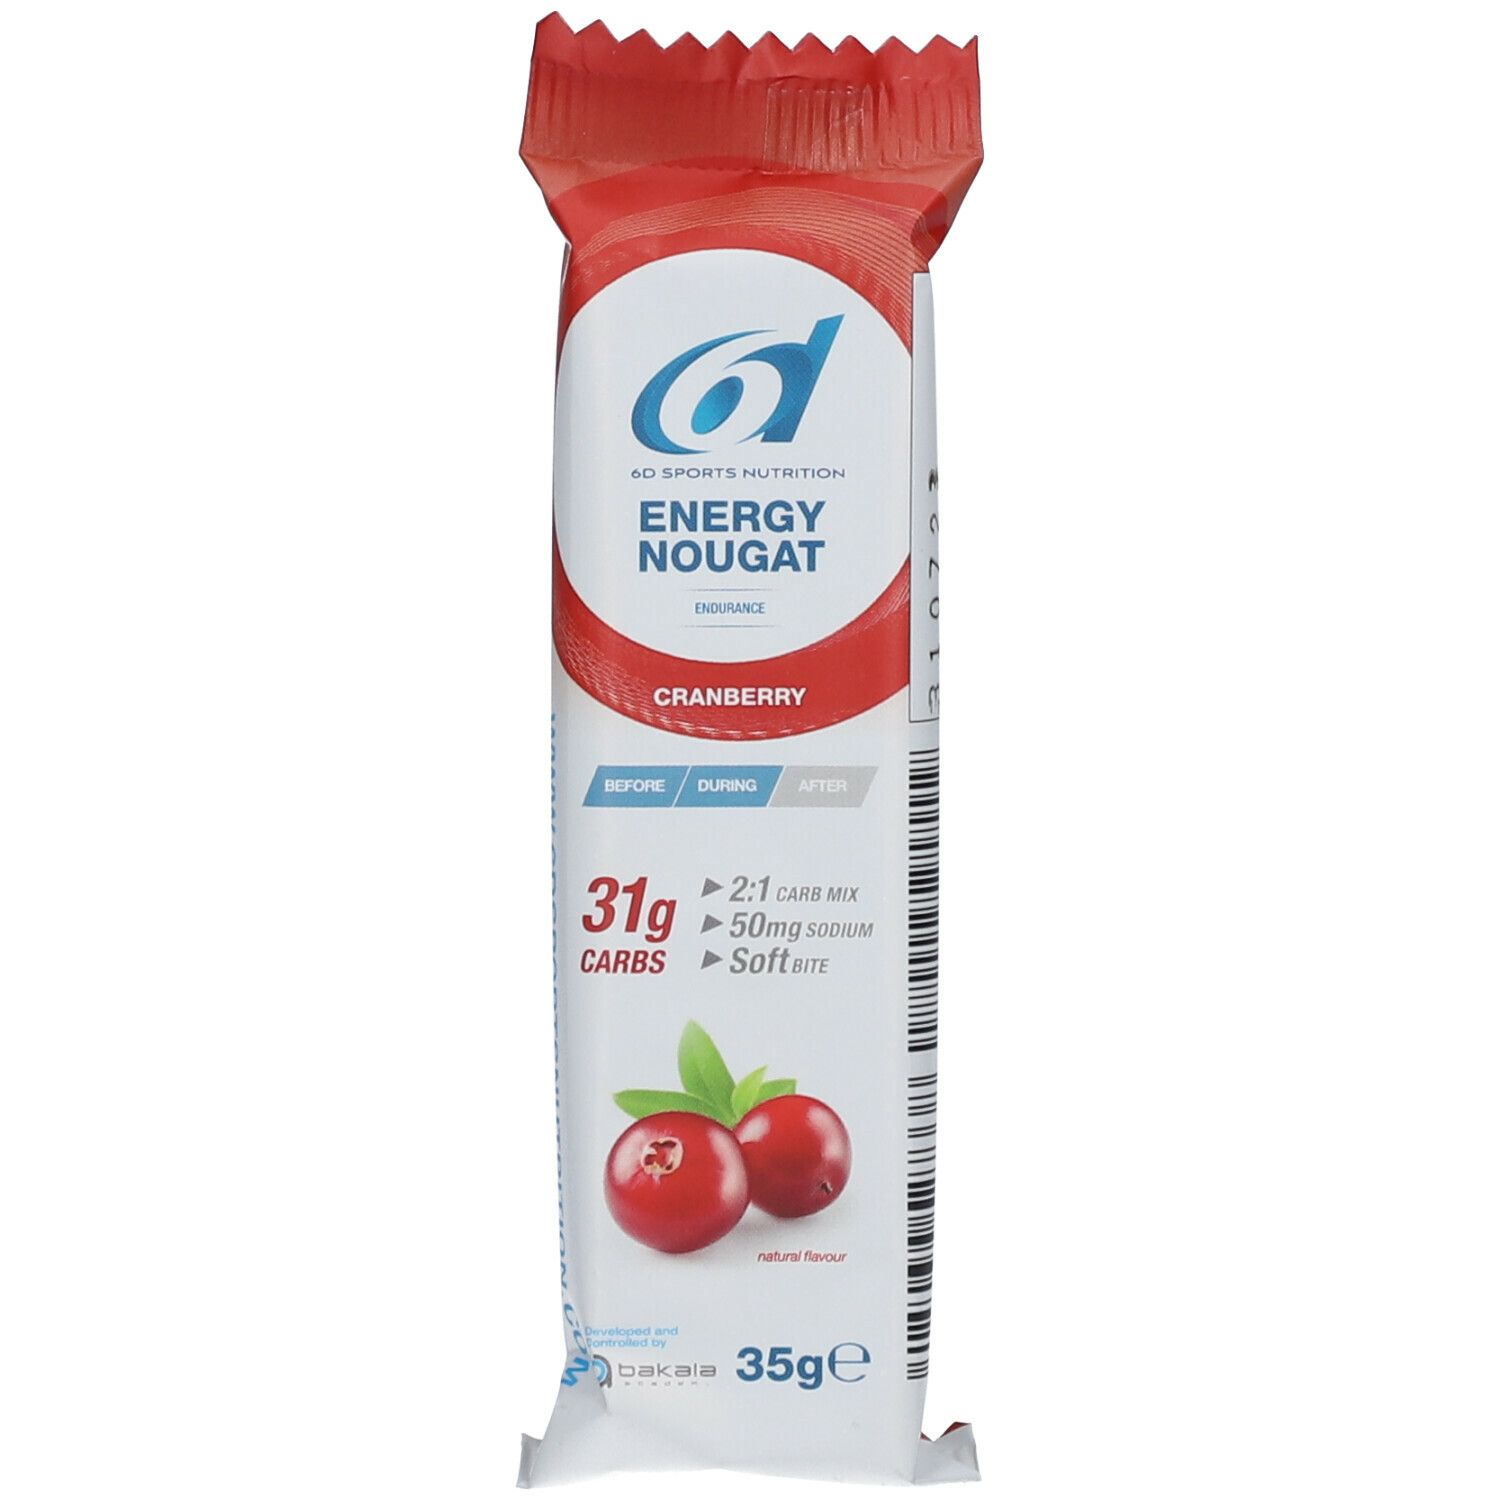 6D Sports Nutrition Energy Nougat Cranberry